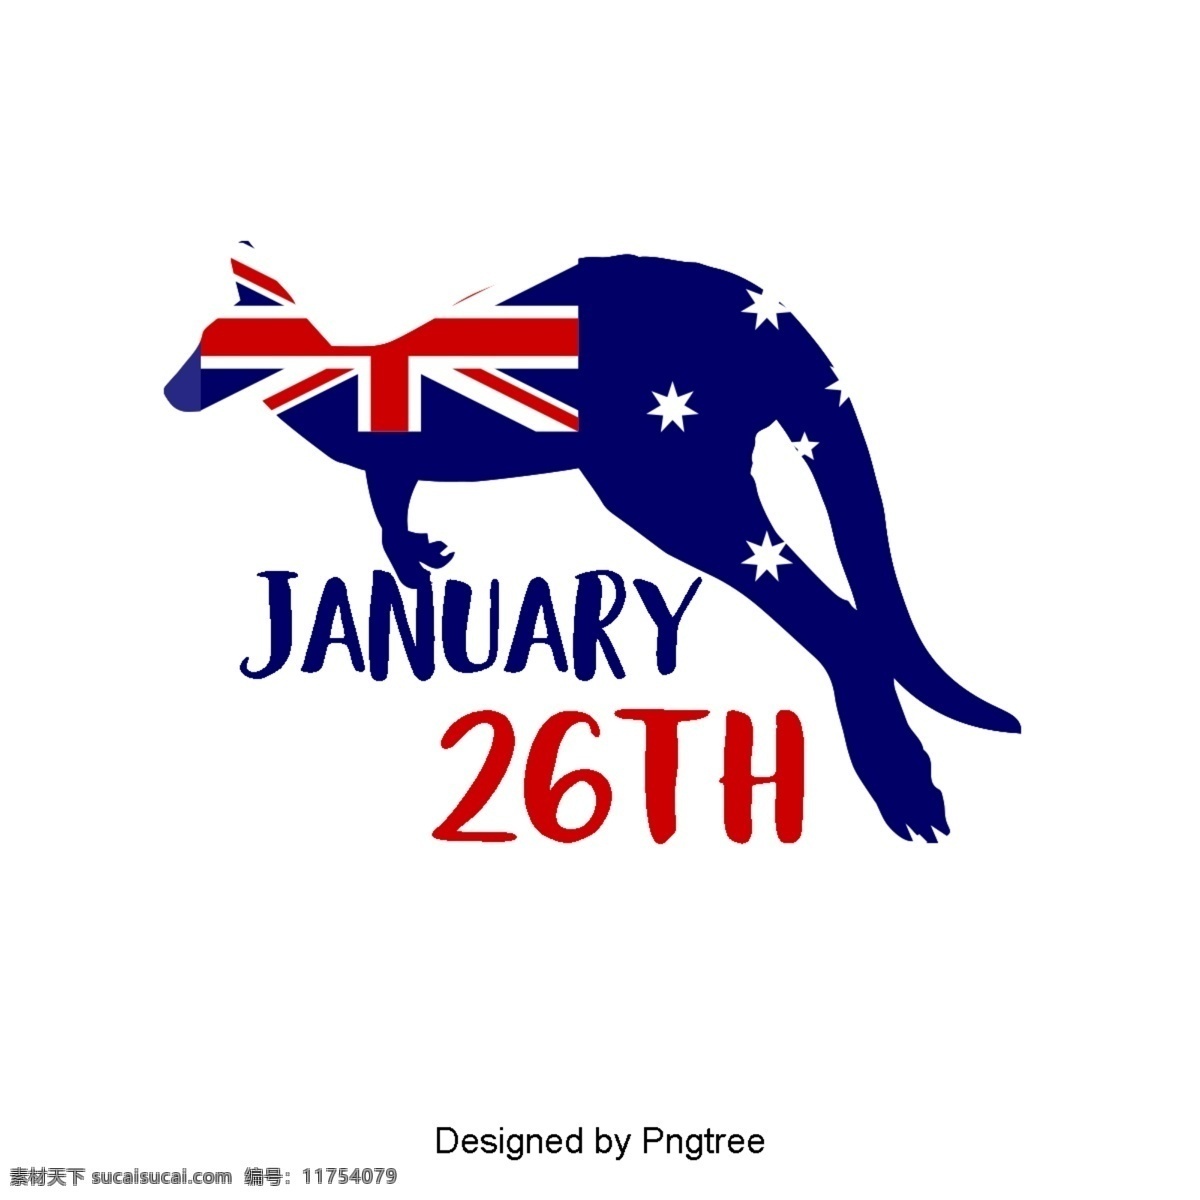 澳大利亚 国旗 袋鼠 蓝色 红色 星星 字体 澳大利亚日 爱国